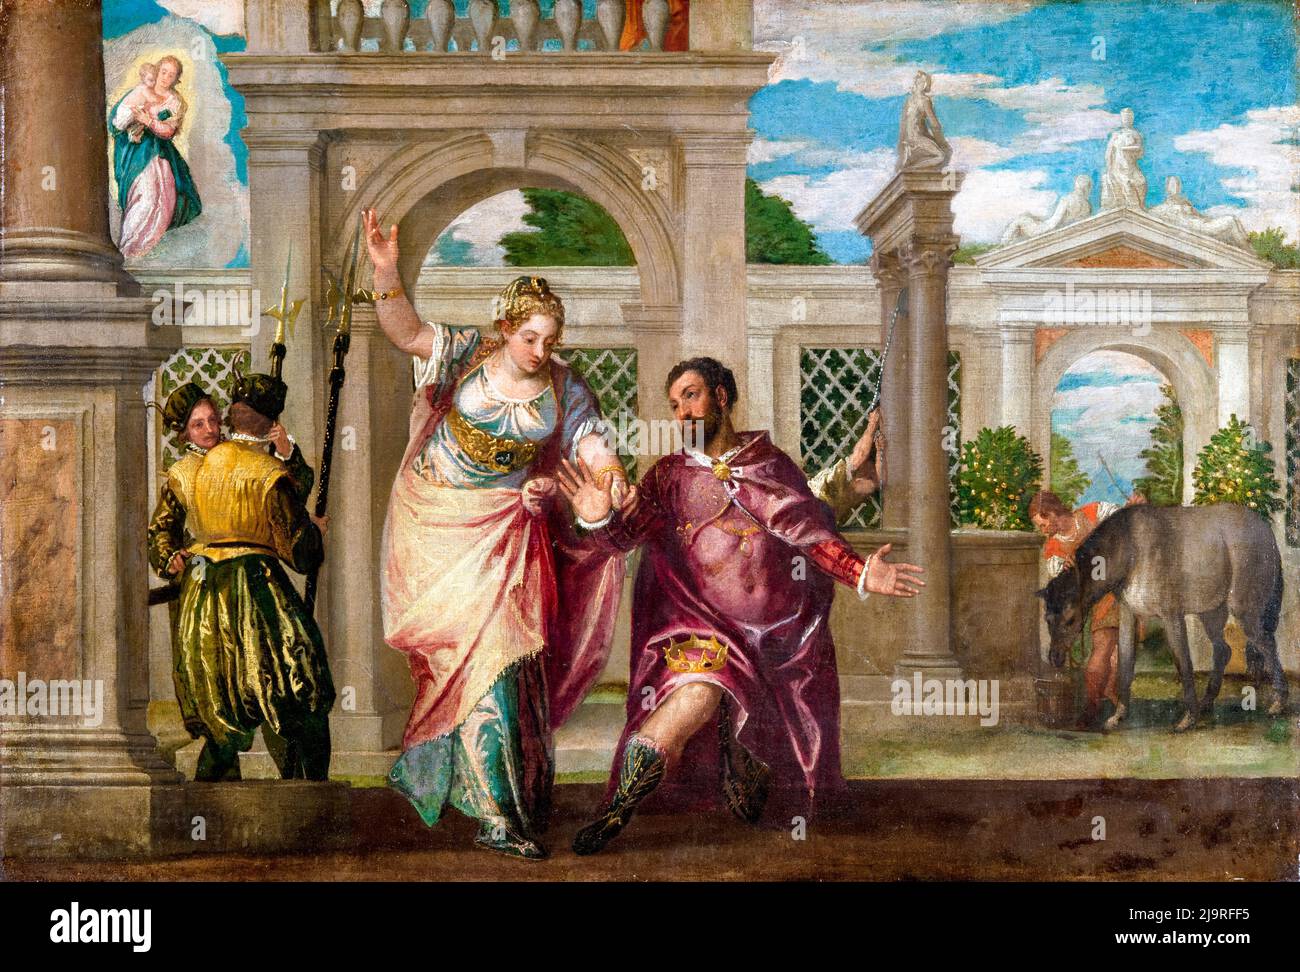 Emperador Augusto y el Sibyl, pintura de Paolo Veronese, antes de 1588 Foto de stock